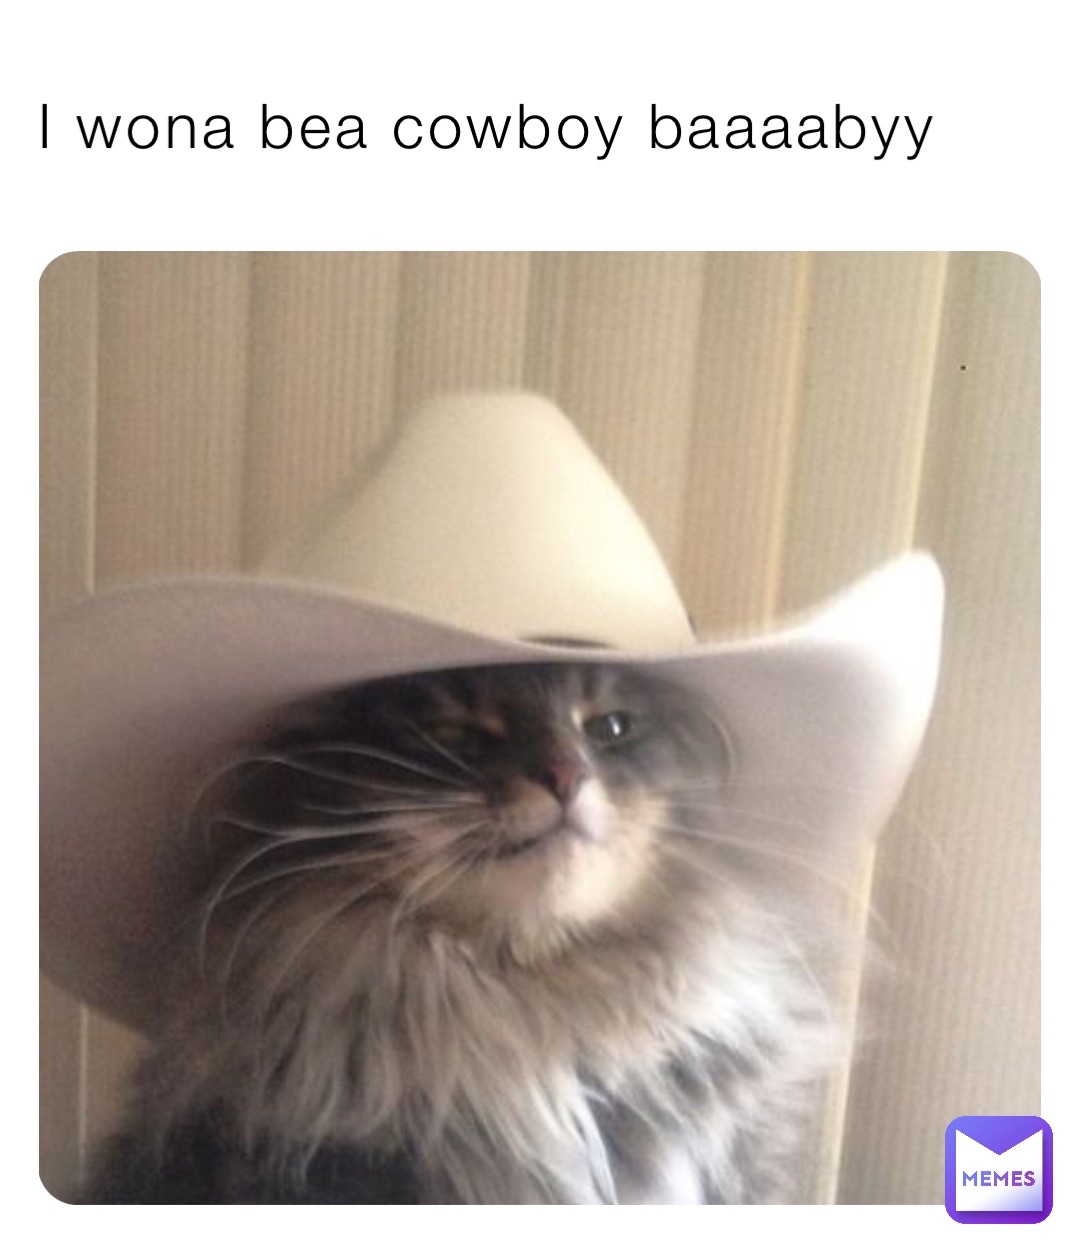 I wona bea cowboy baaaabyy